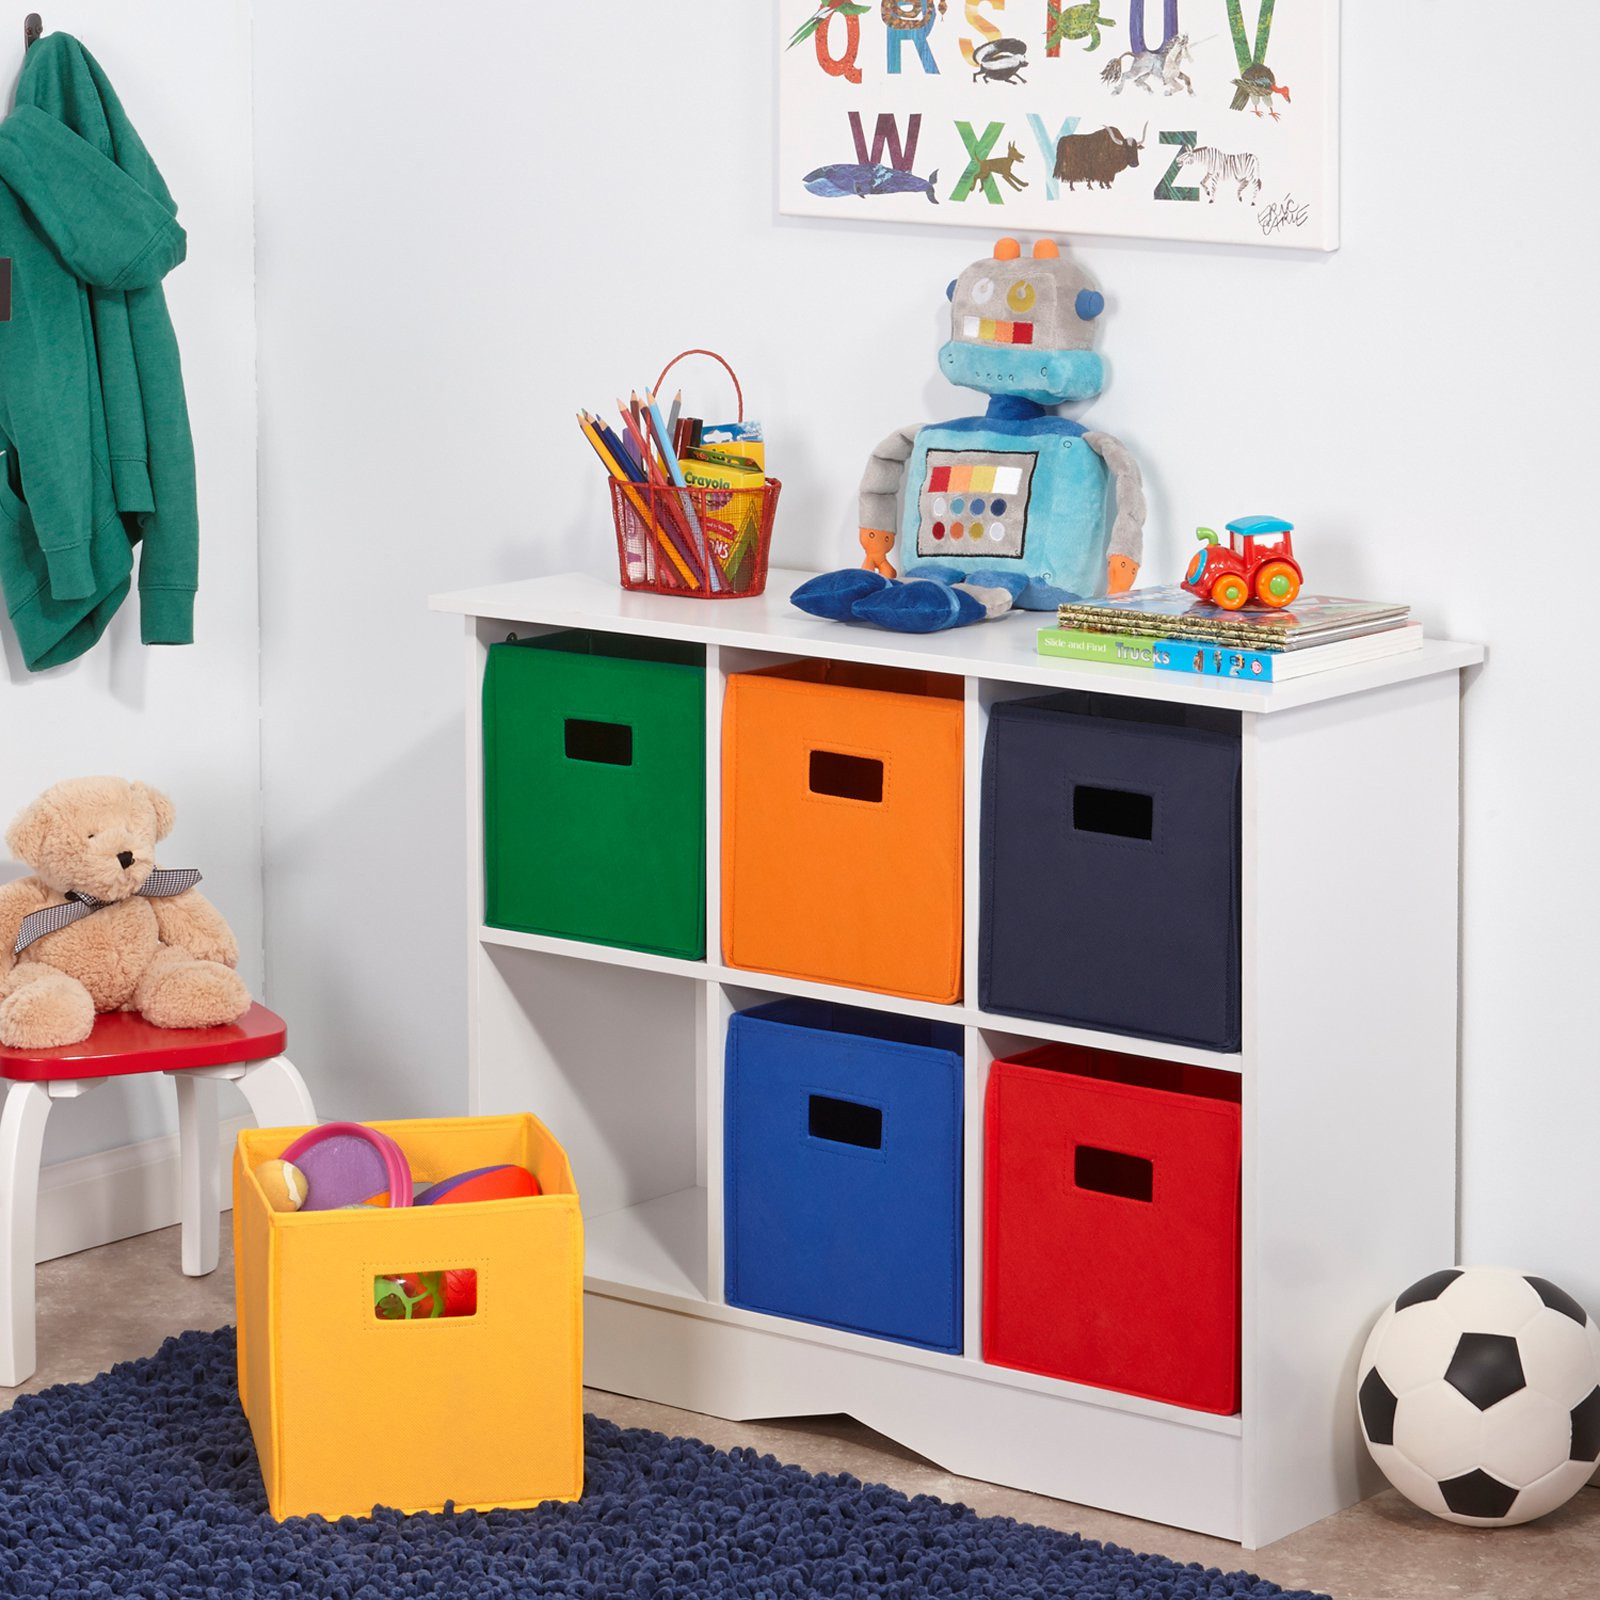 Children Storage Bins
 RiverRidge Kids White Cabinet with 6 Bins Toy Storage at